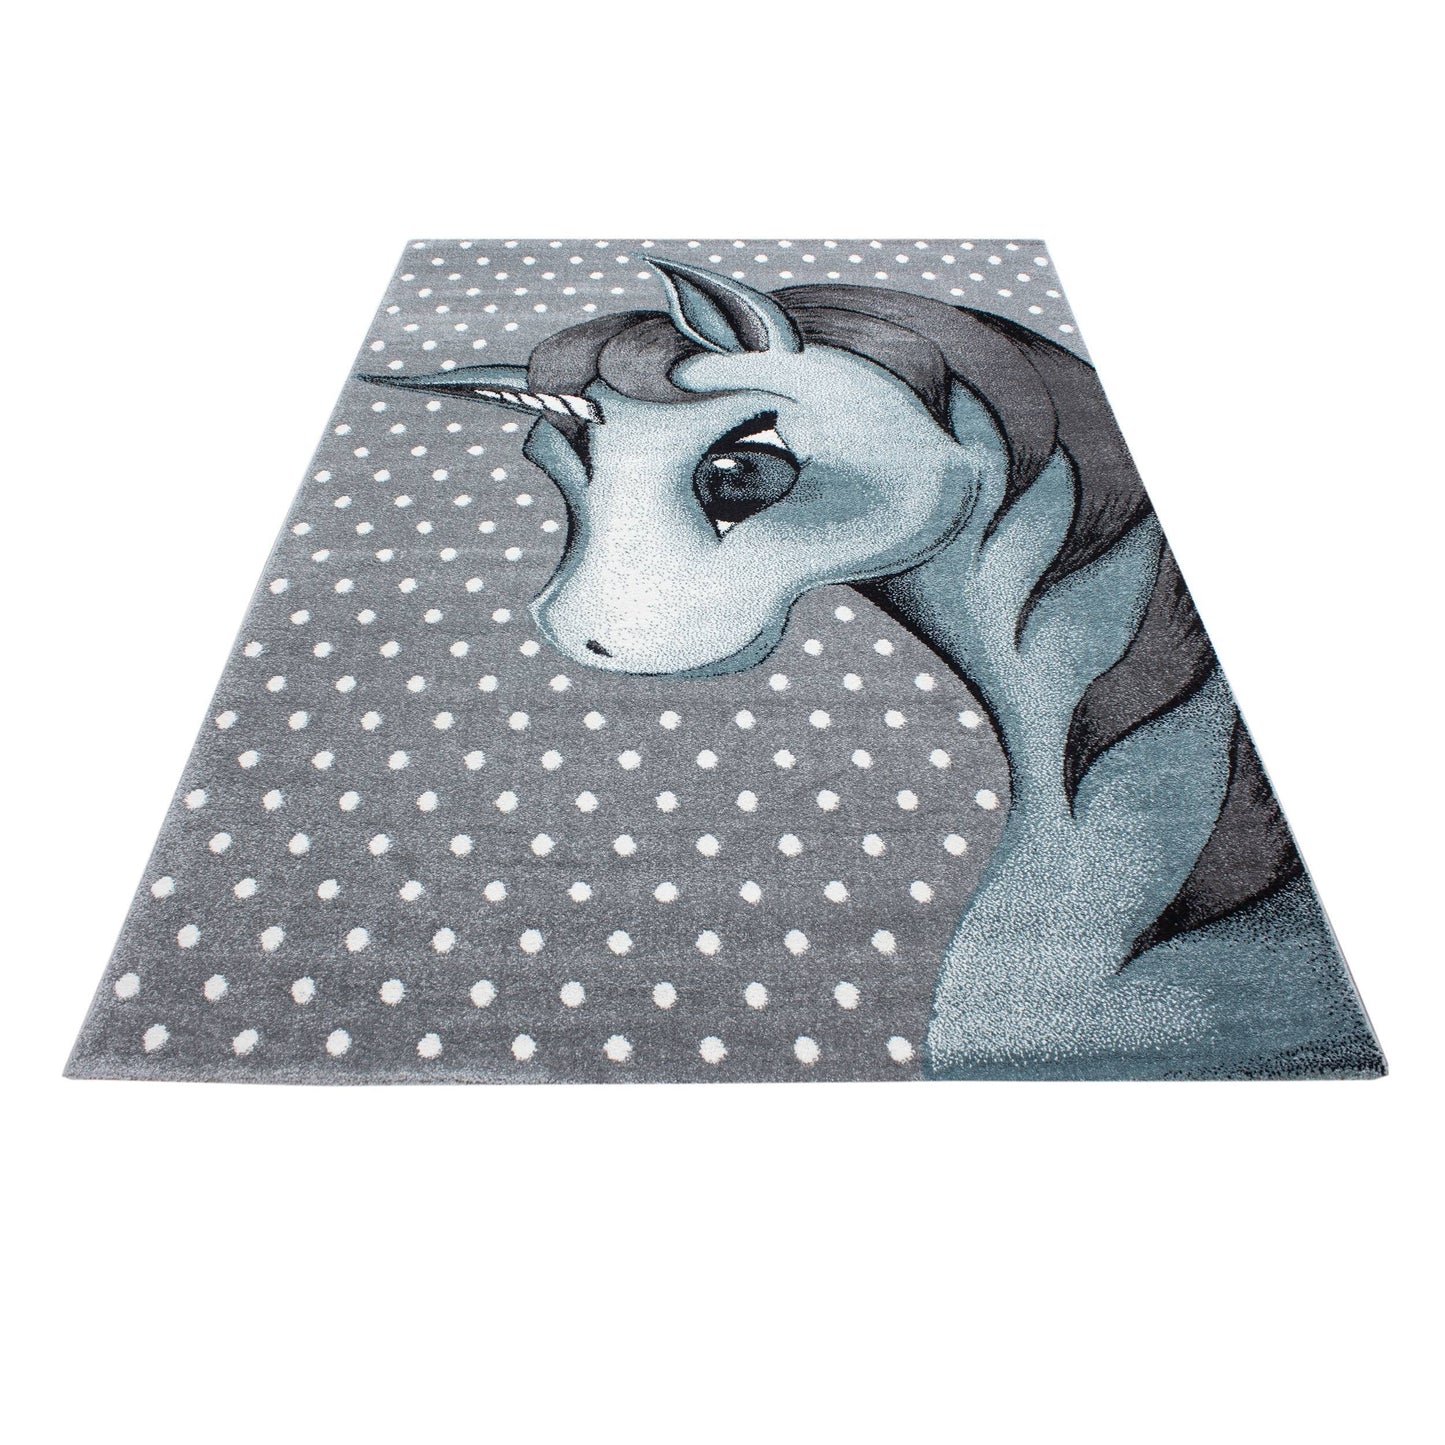 Kinderteppich Kinderzimmer Teppich Einhorn Muster Grau-Weiß-Blau